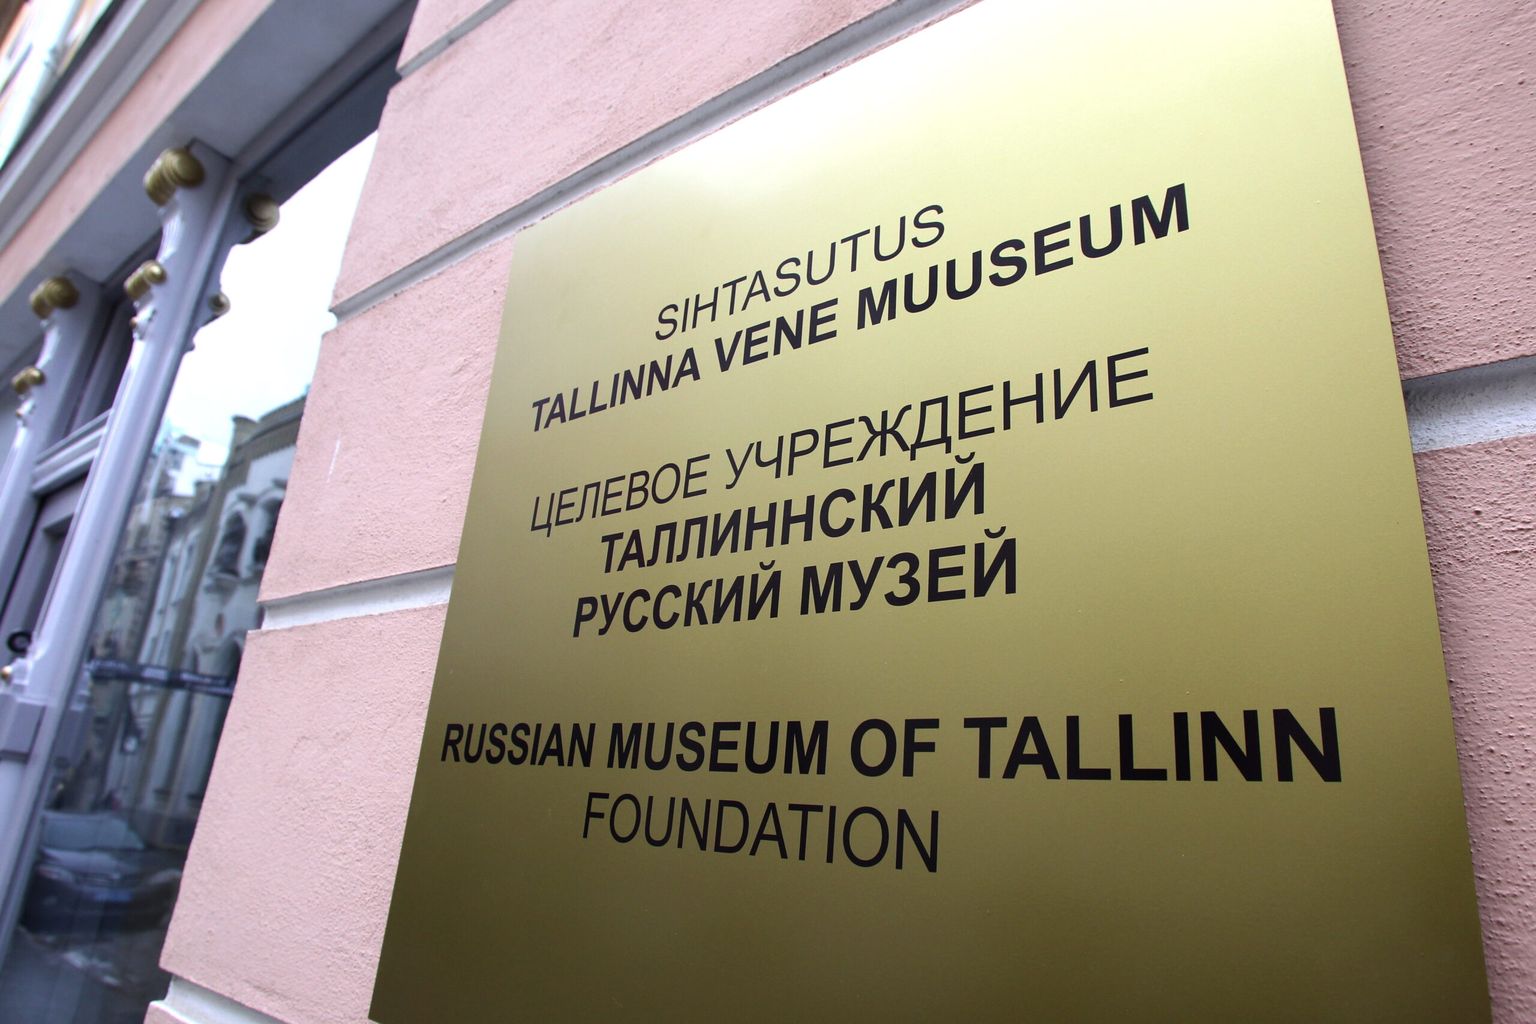 Таллиннский русский музей